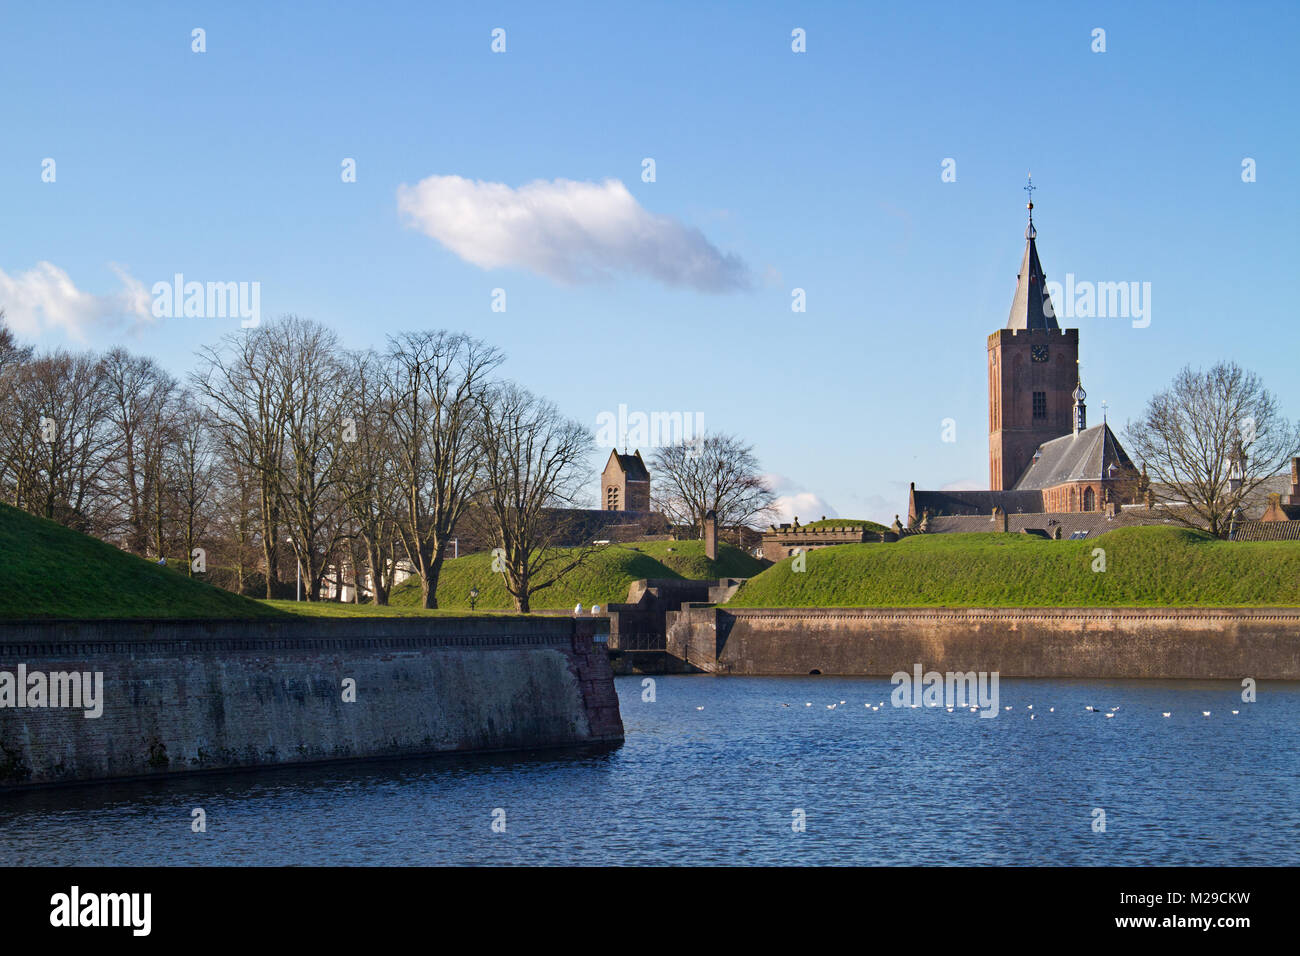 Fosos, murallas y torres de la iglesia de la ciudad fortificada de Naarden en Holanda Foto de stock